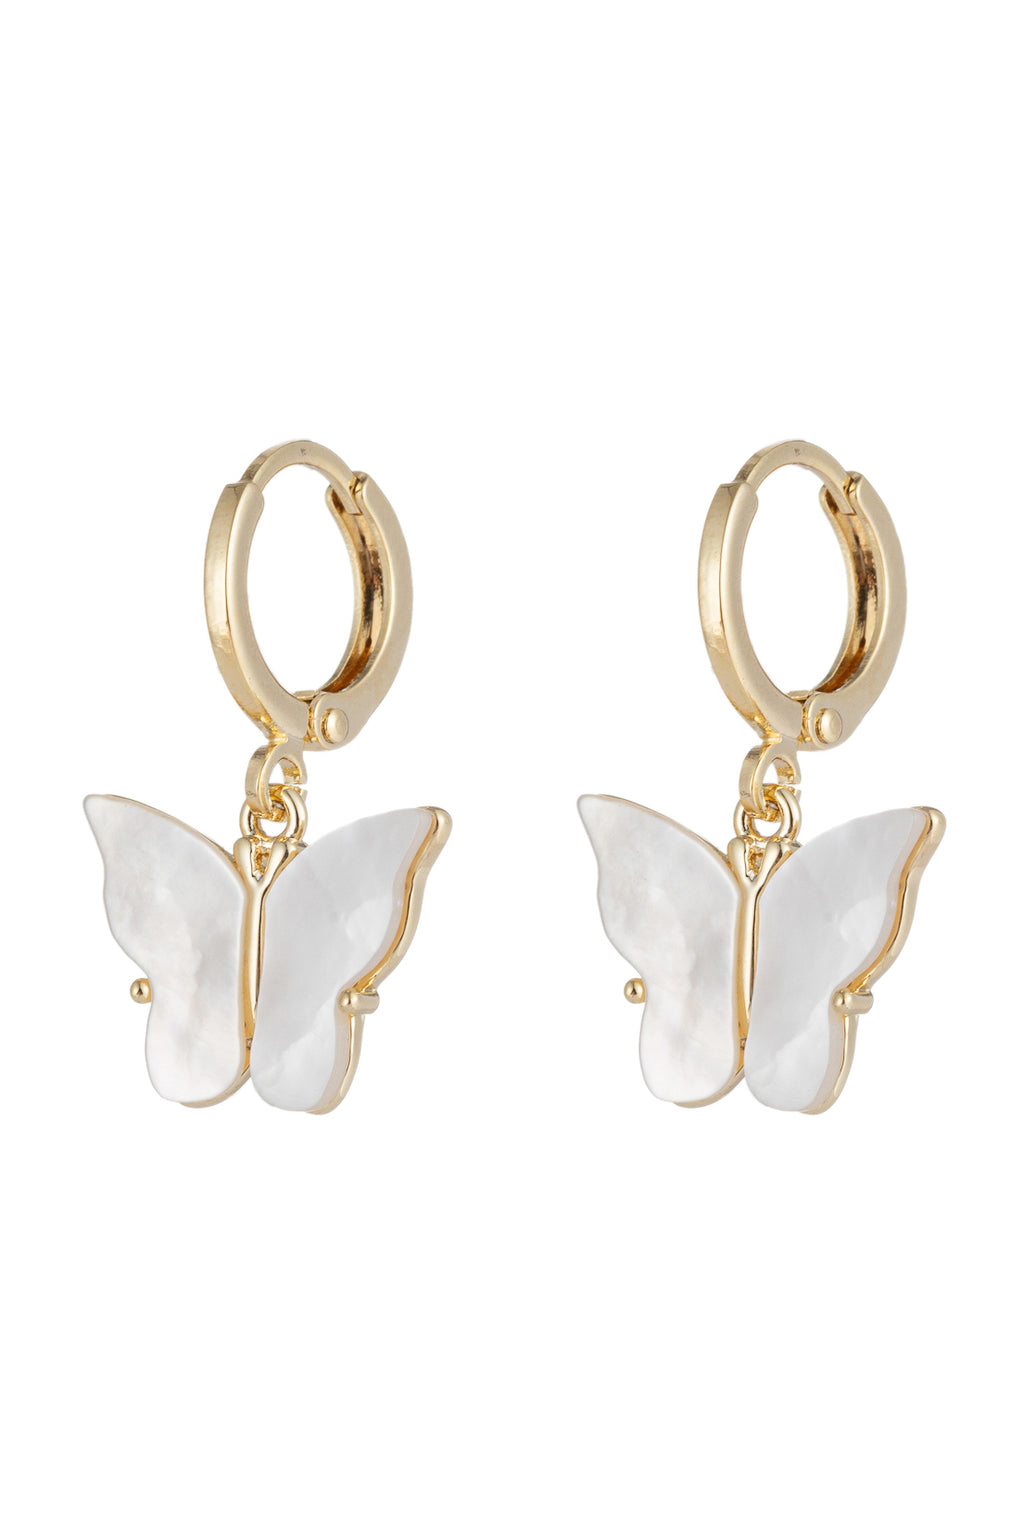 18k gold plated butterfly huggee earrings.